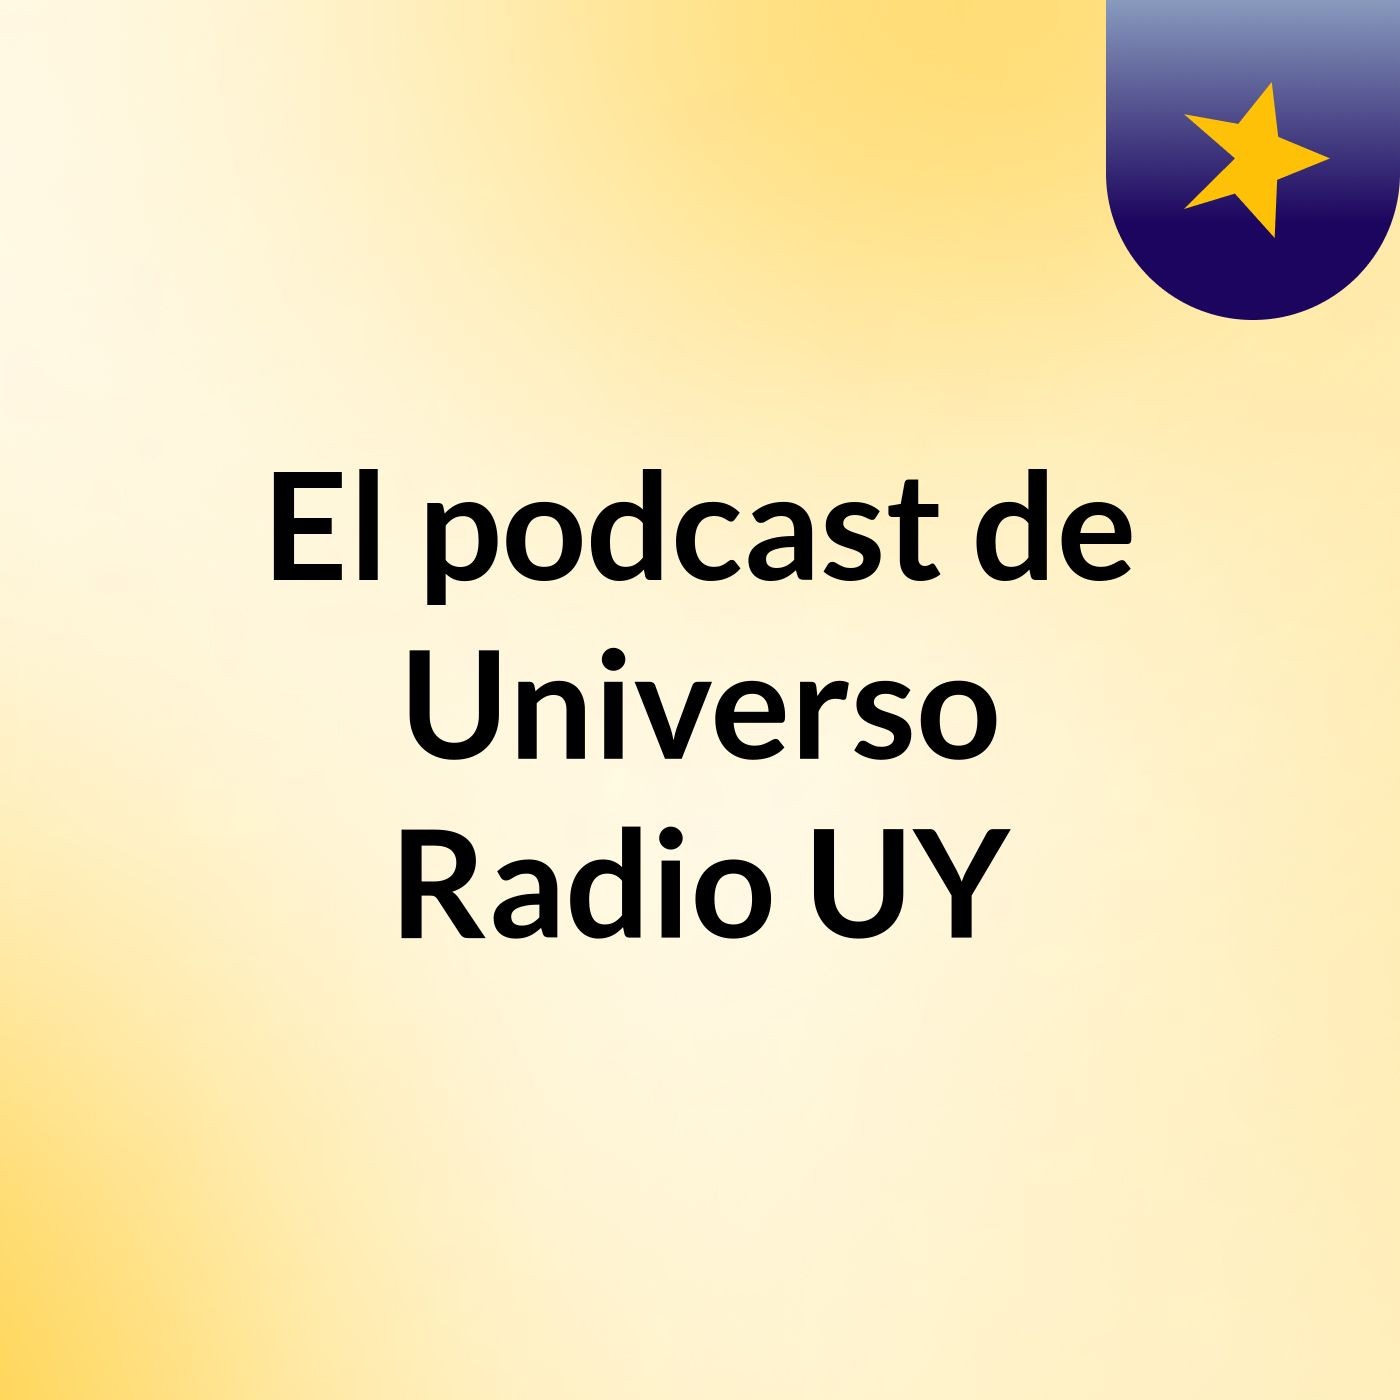 El podcast de Universo Radio UY